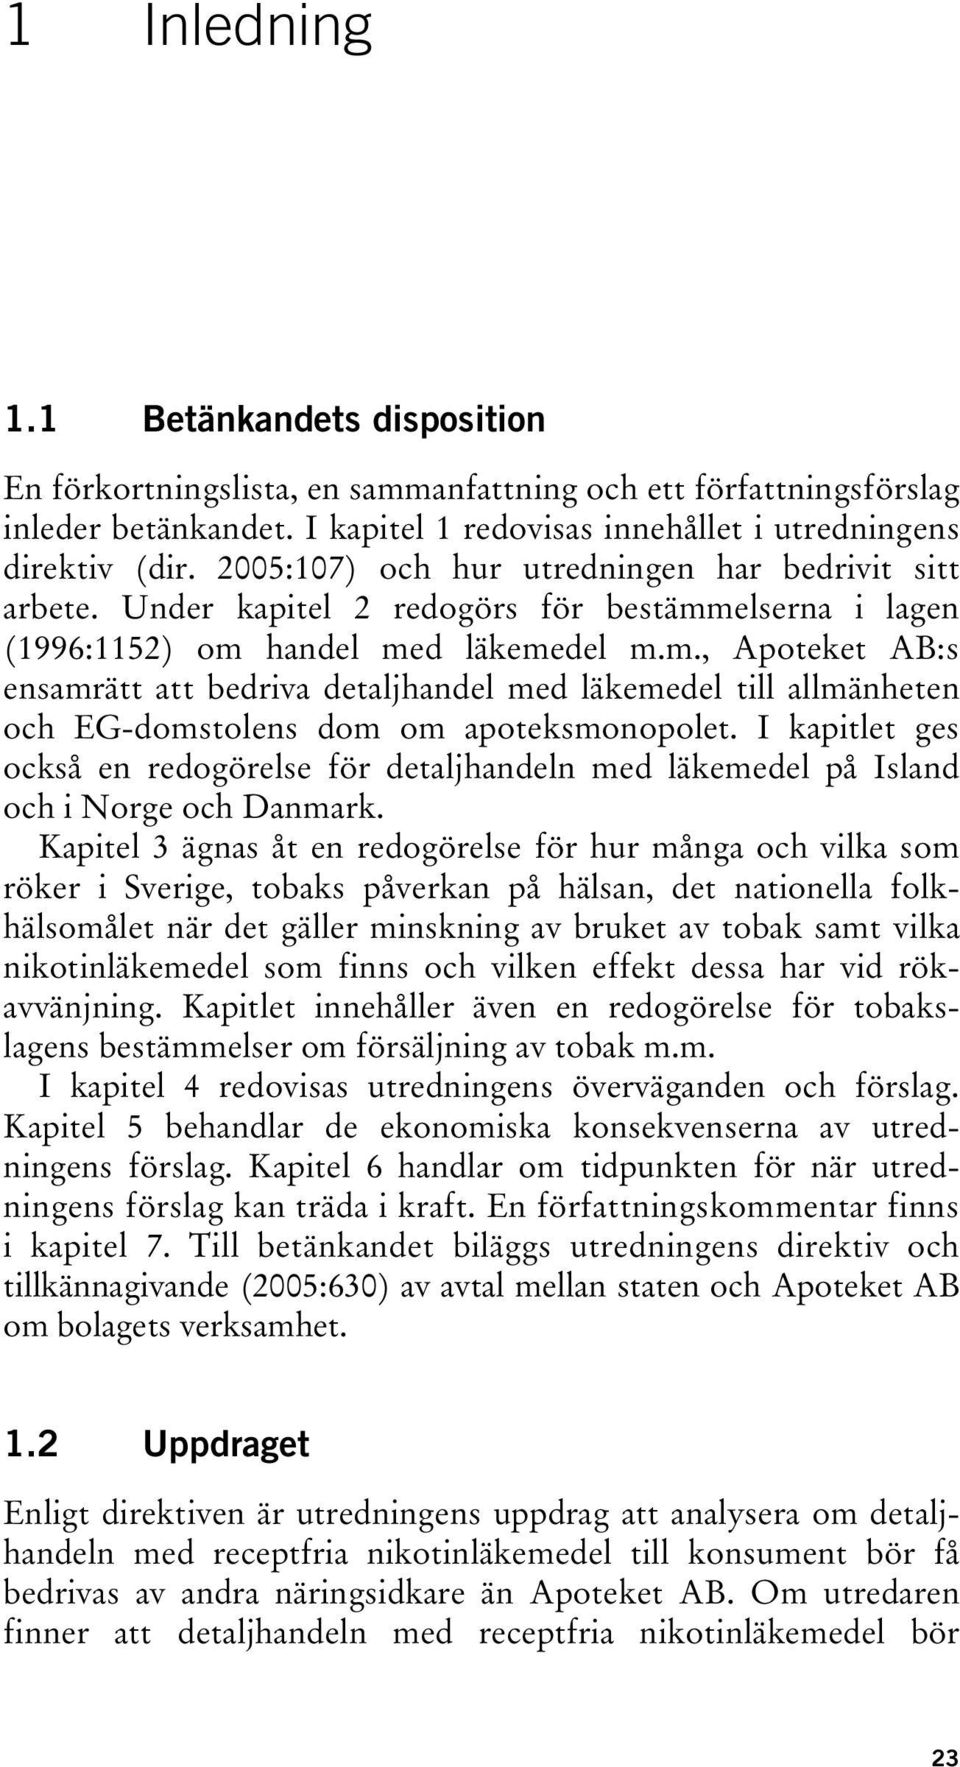 elserna i lagen (1996:1152) om handel med läkemedel m.m., Apoteket AB:s ensamrätt att bedriva detaljhandel med läkemedel till allmänheten och EG-domstolens dom om apoteksmonopolet.